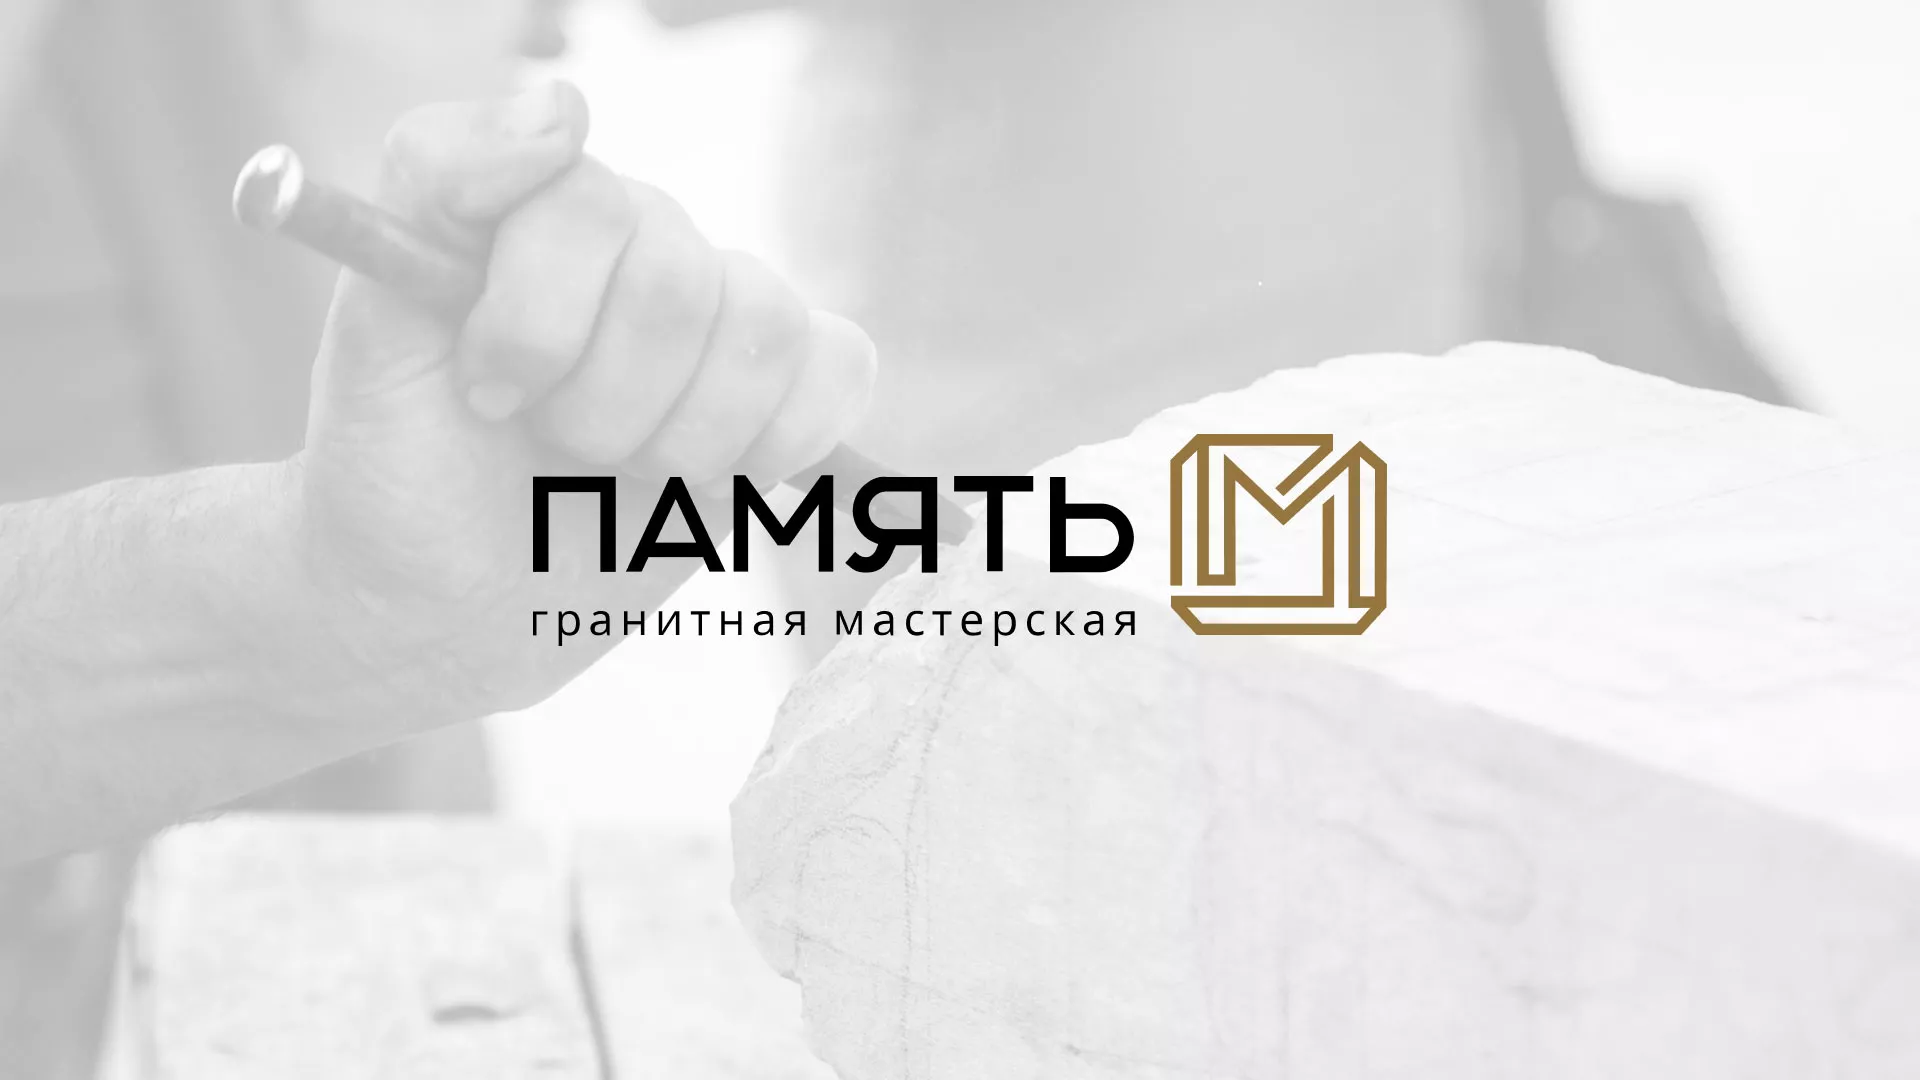 Разработка логотипа и сайта компании «Память-М» в Урюпинске